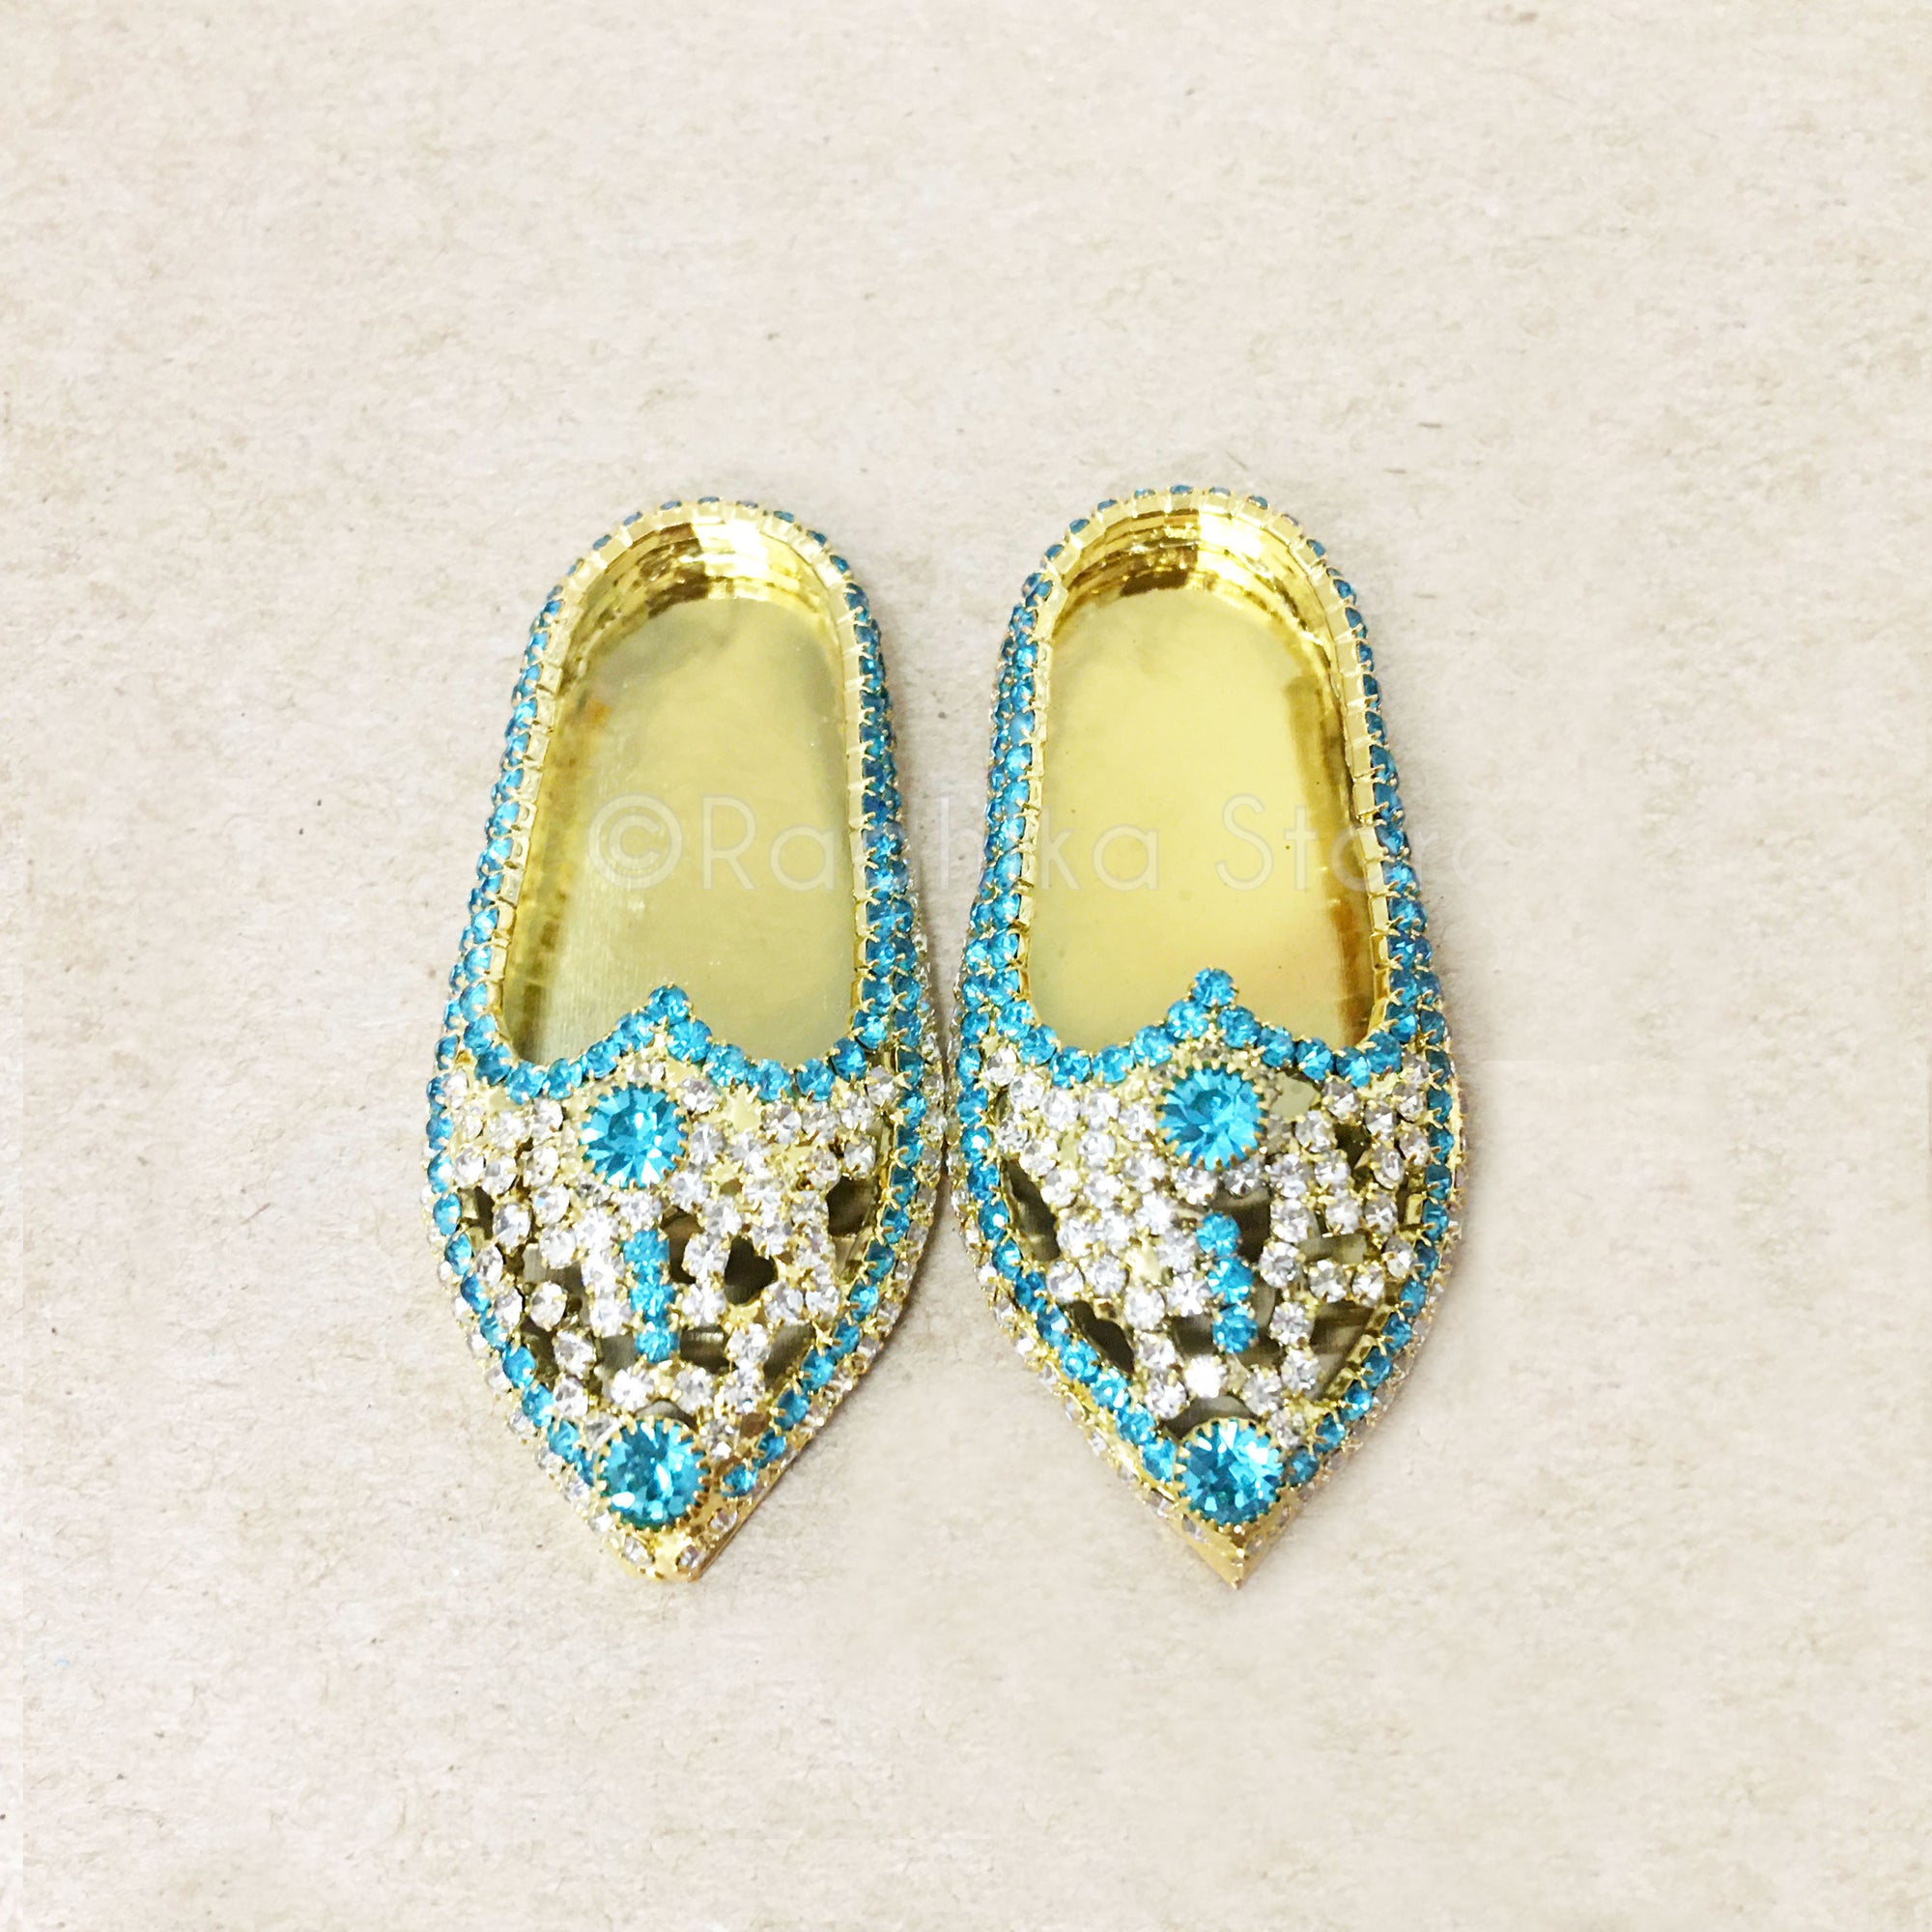 Teal Blue Topaz and Diamond Rhinestone - Deity Shoes - Large Sizes